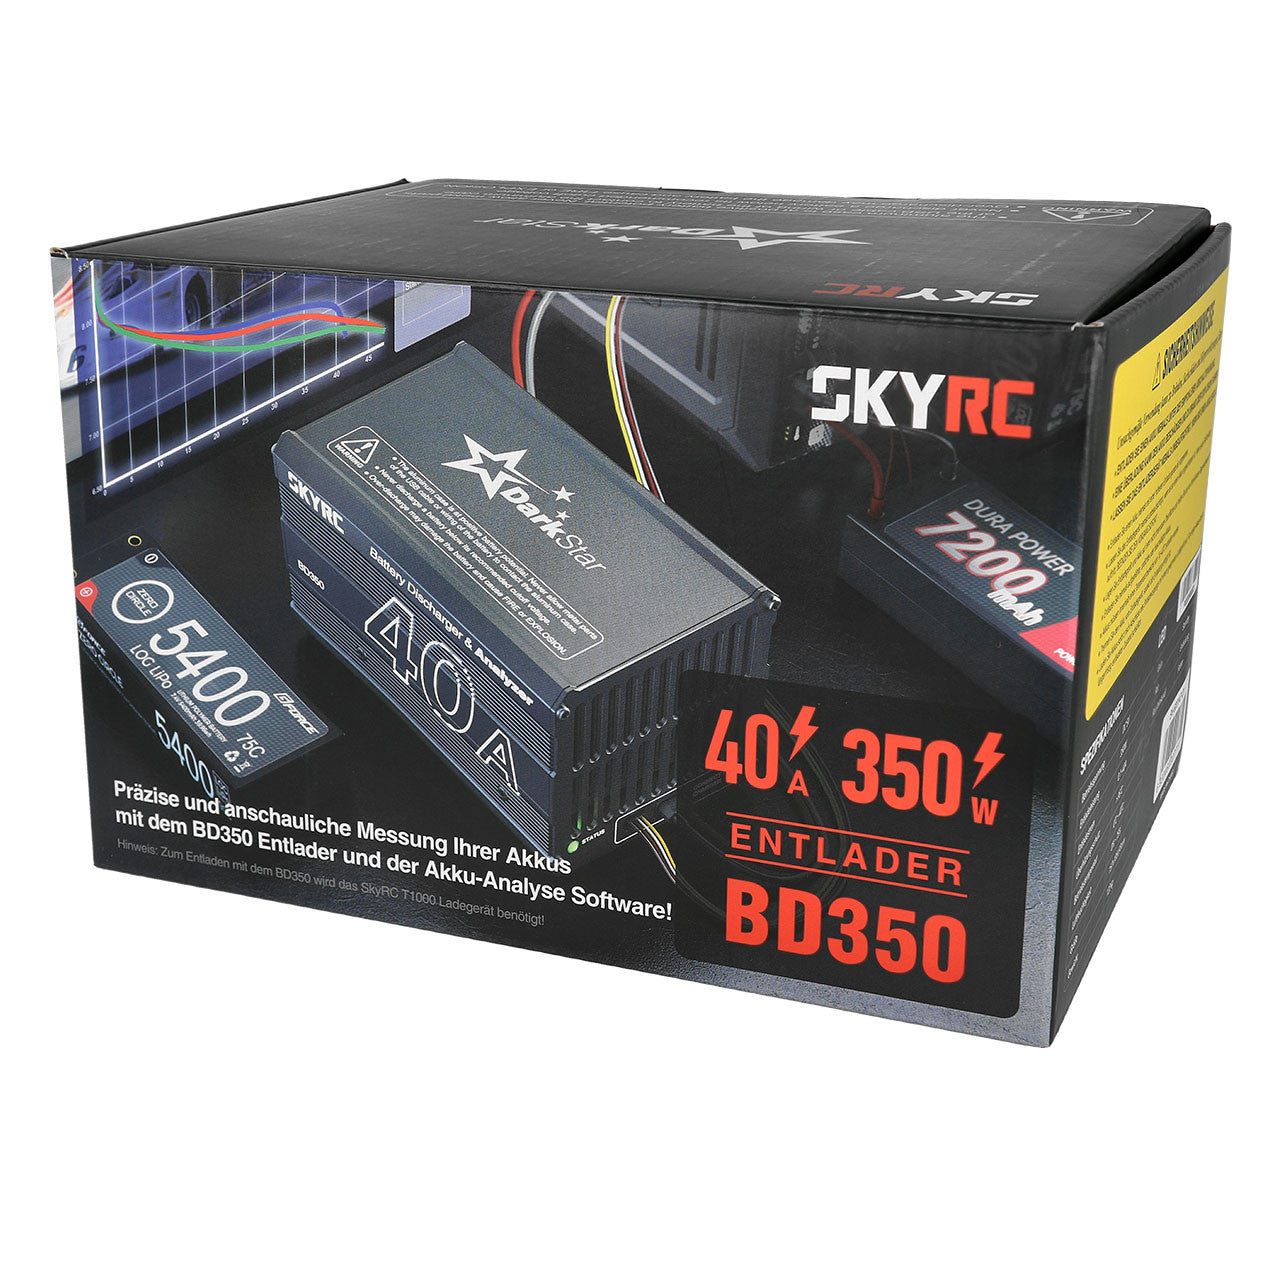 SkyRc Unité de Décharge BD350 pour T1000 SK600147-01